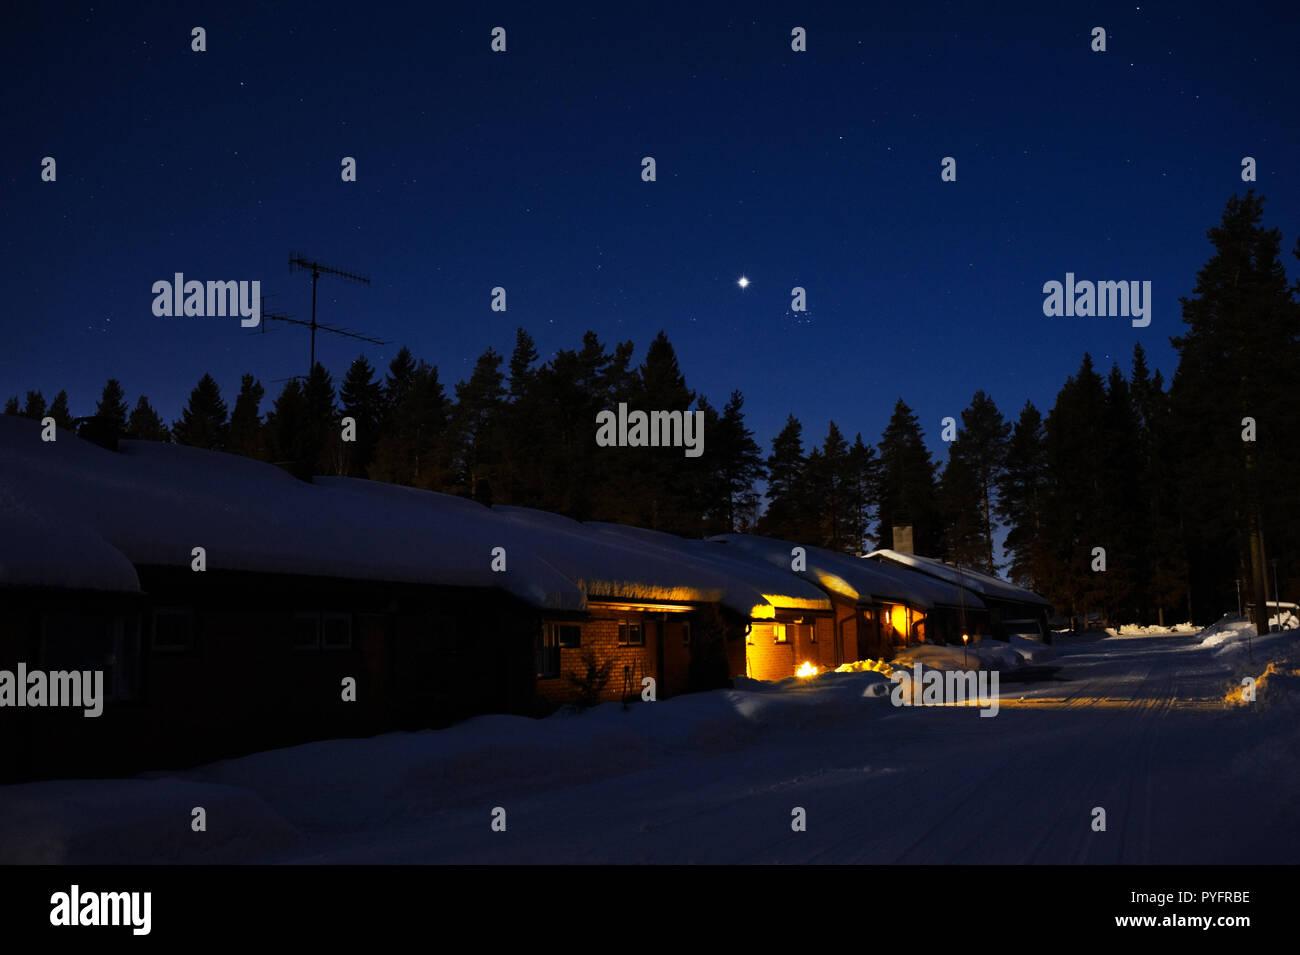 Villetta a schiera in inverno nevoso di notte. Il pianeta Venere e le Pleiadi nel cielo stellato. Foto Stock